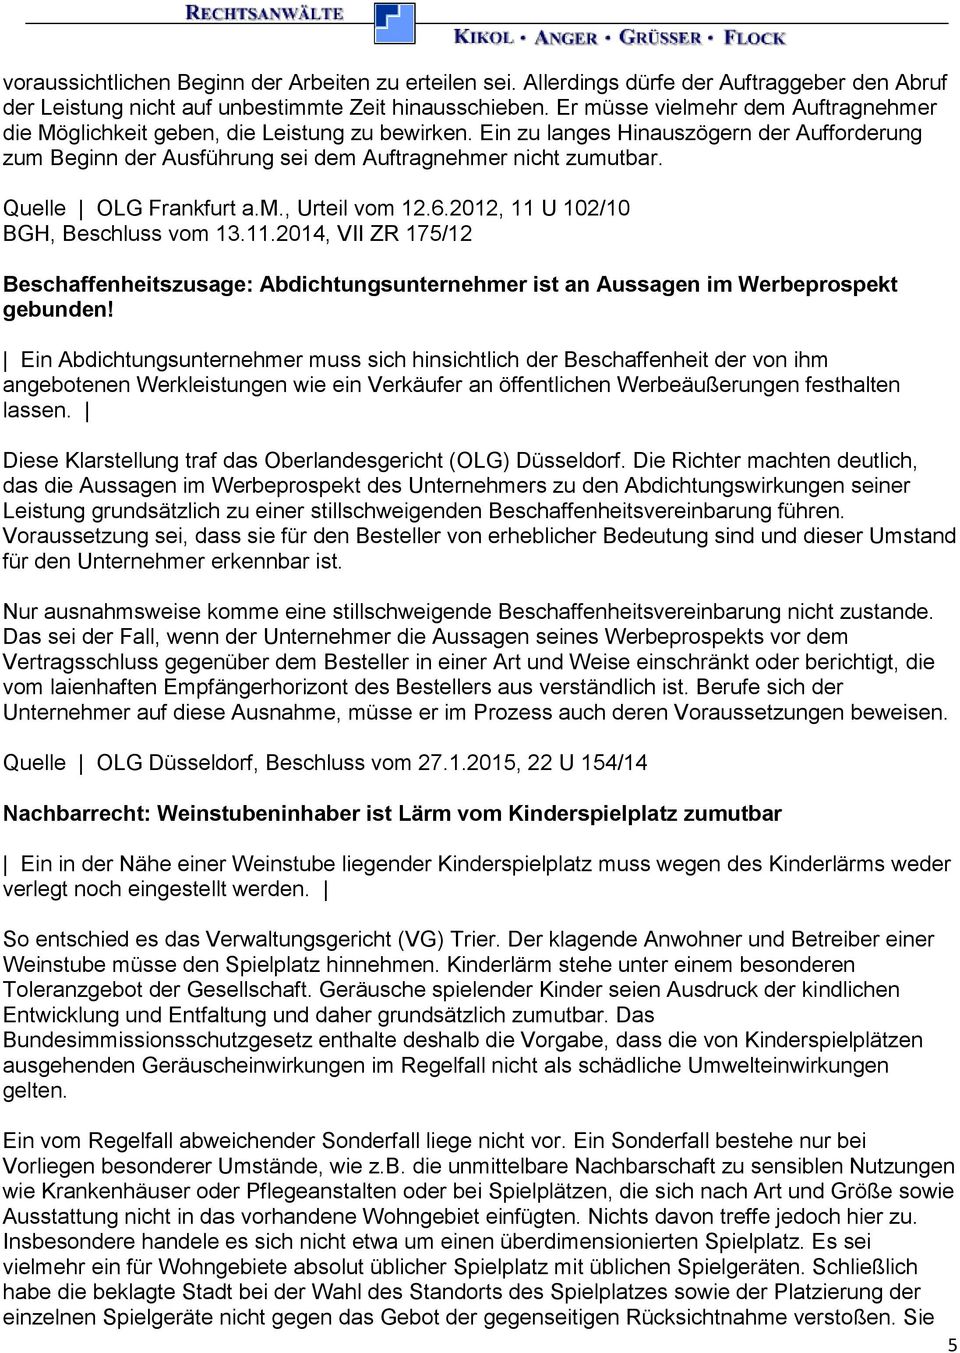 Quelle OLG Frankfurt a.m., Urteil vom 12.6.2012, 11 U 102/10 BGH, Beschluss vom 13.11.2014, VII ZR 175/12 Beschaffenheitszusage: Abdichtungsunternehmer ist an Aussagen im Werbeprospekt gebunden!